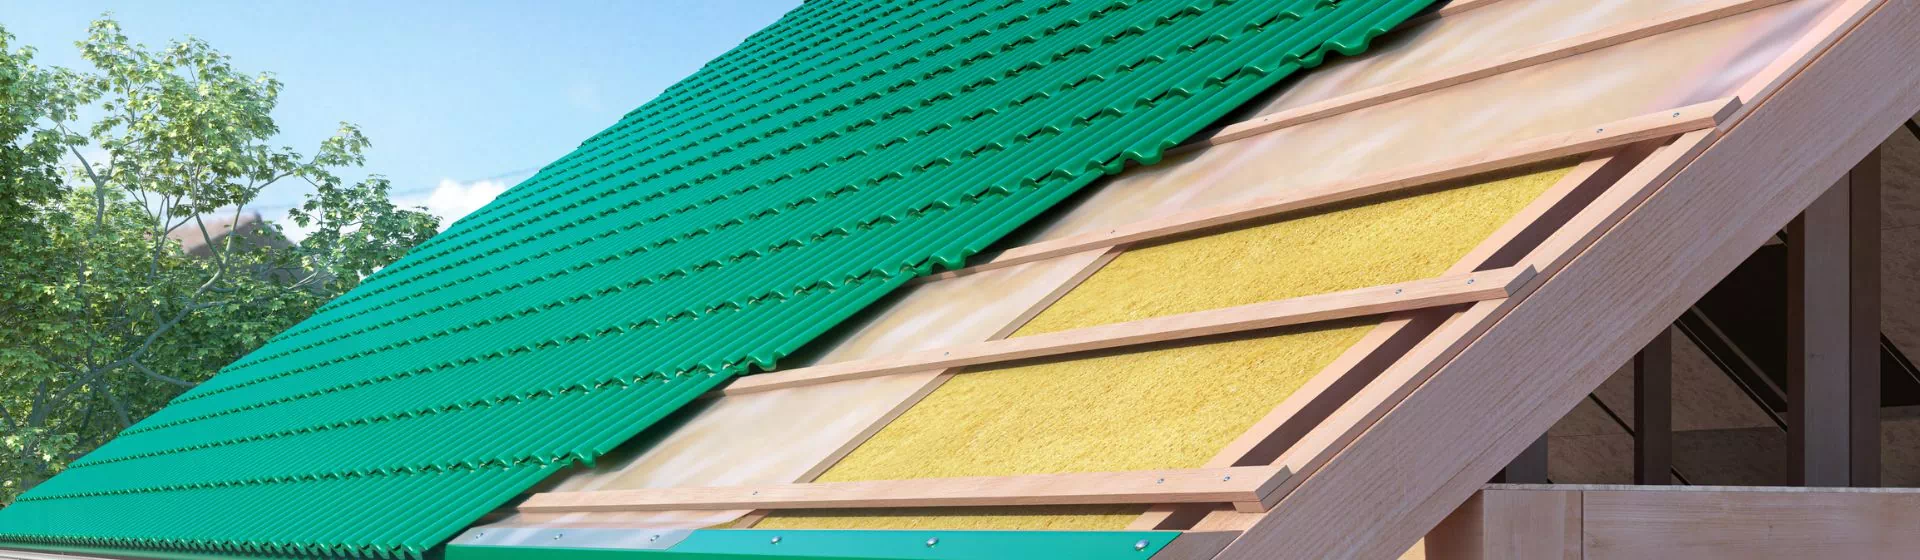 układanie zielonej blachy na dachu